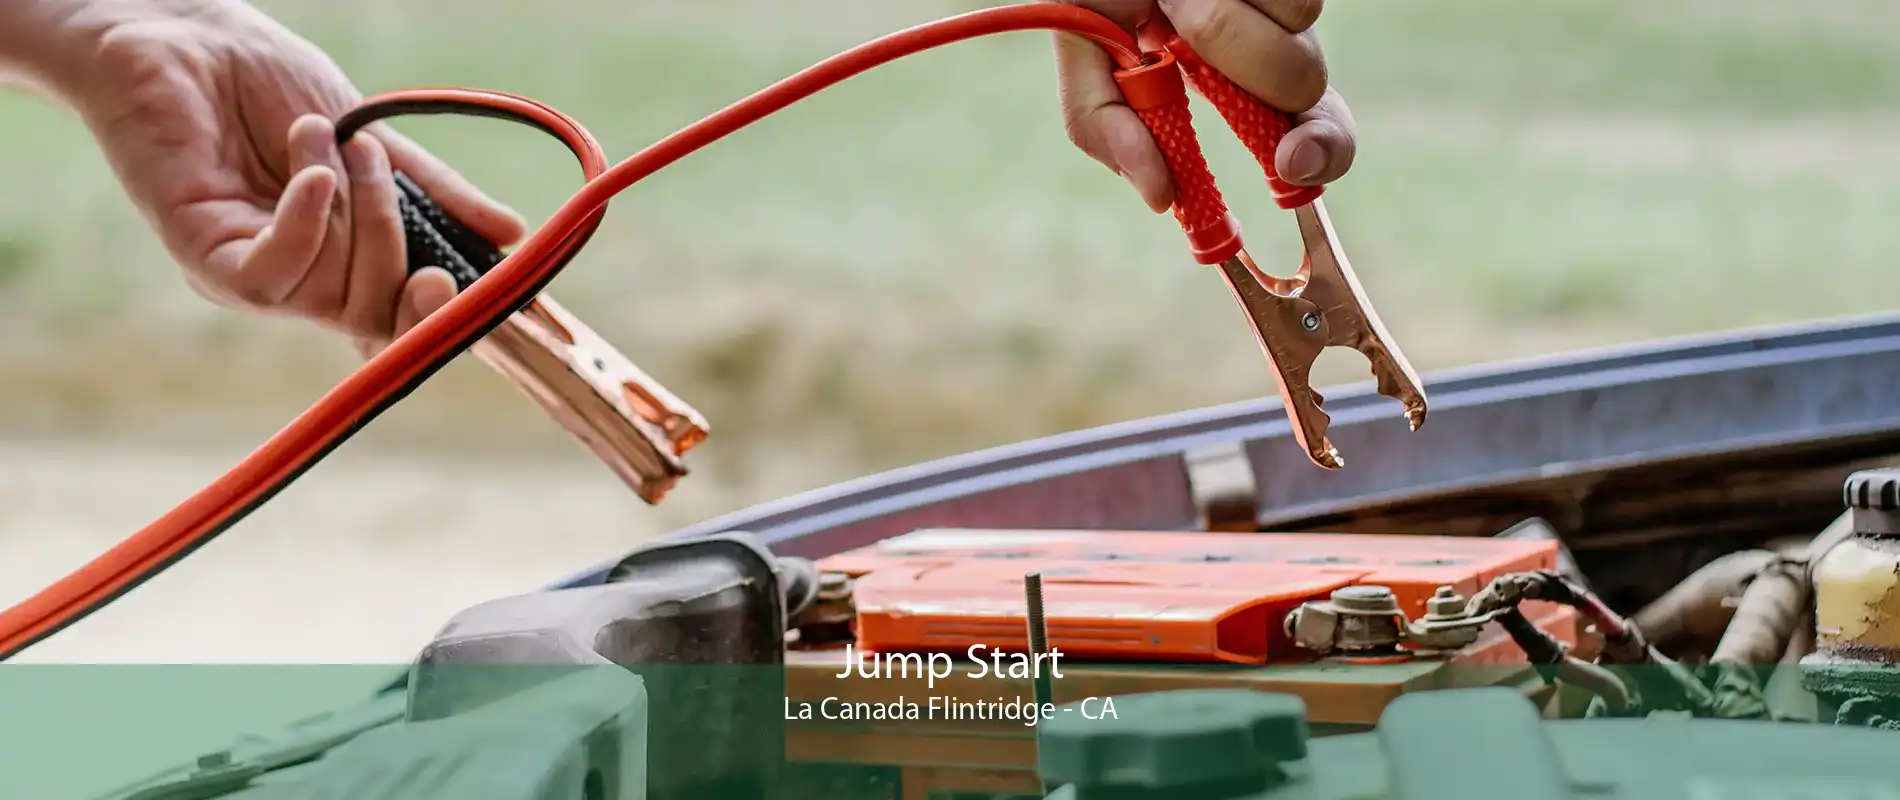 Jump Start La Canada Flintridge - CA